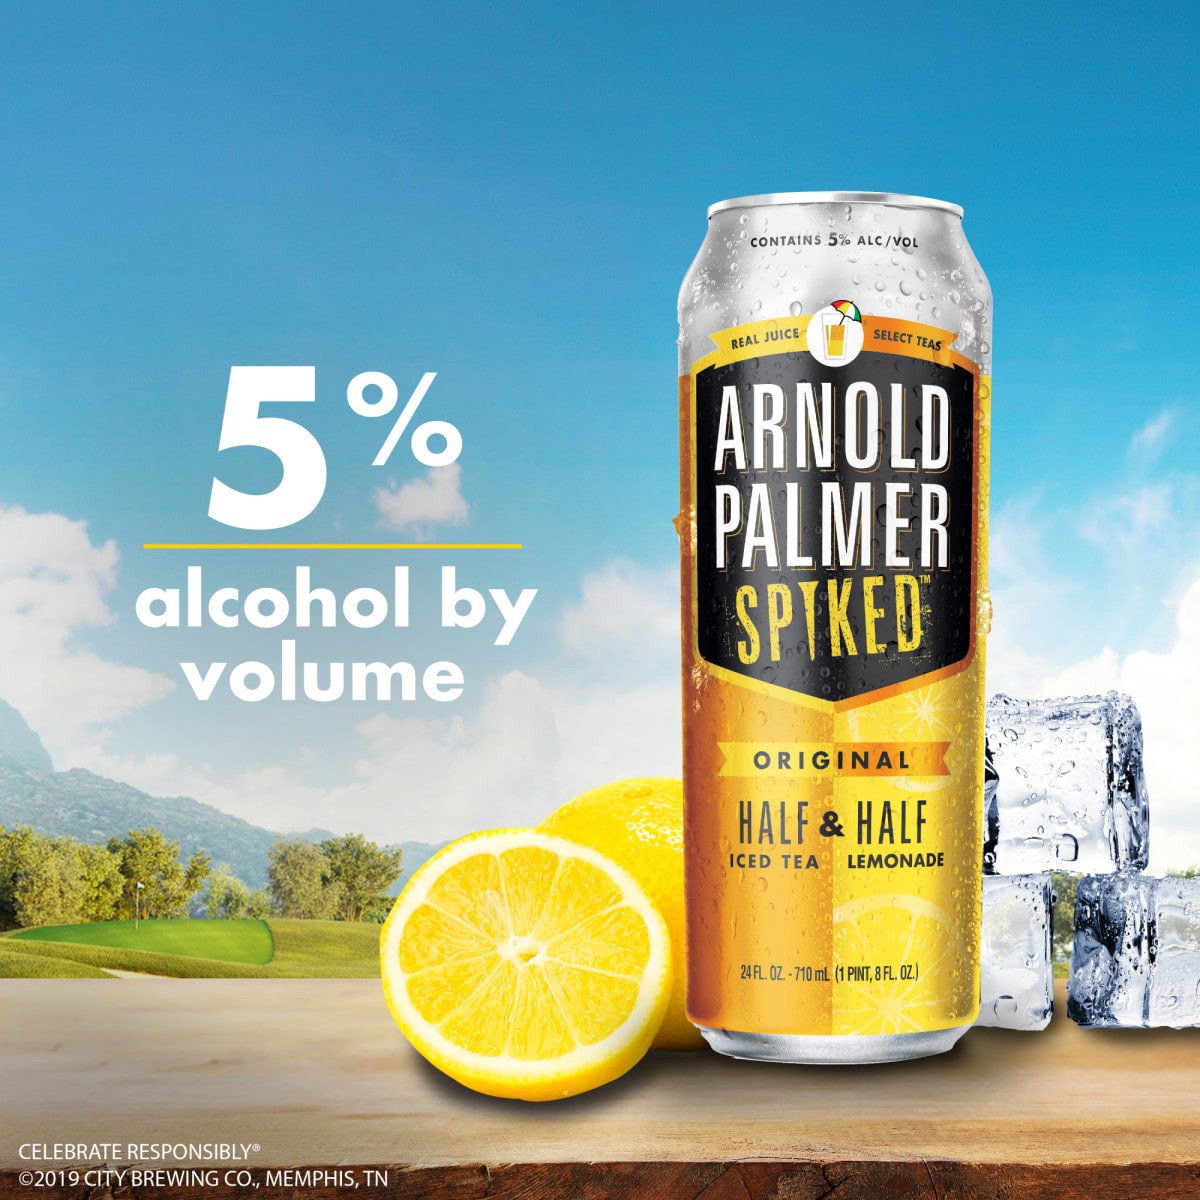 slide 2 of 29, Arnold Palmer Spiked Half & Half Original Arnold Palmer Spiked Original Half & Half Iced Tea Lemonade, 6 Pack, 12 fl oz Cans, 5% ABV, 72 fl oz